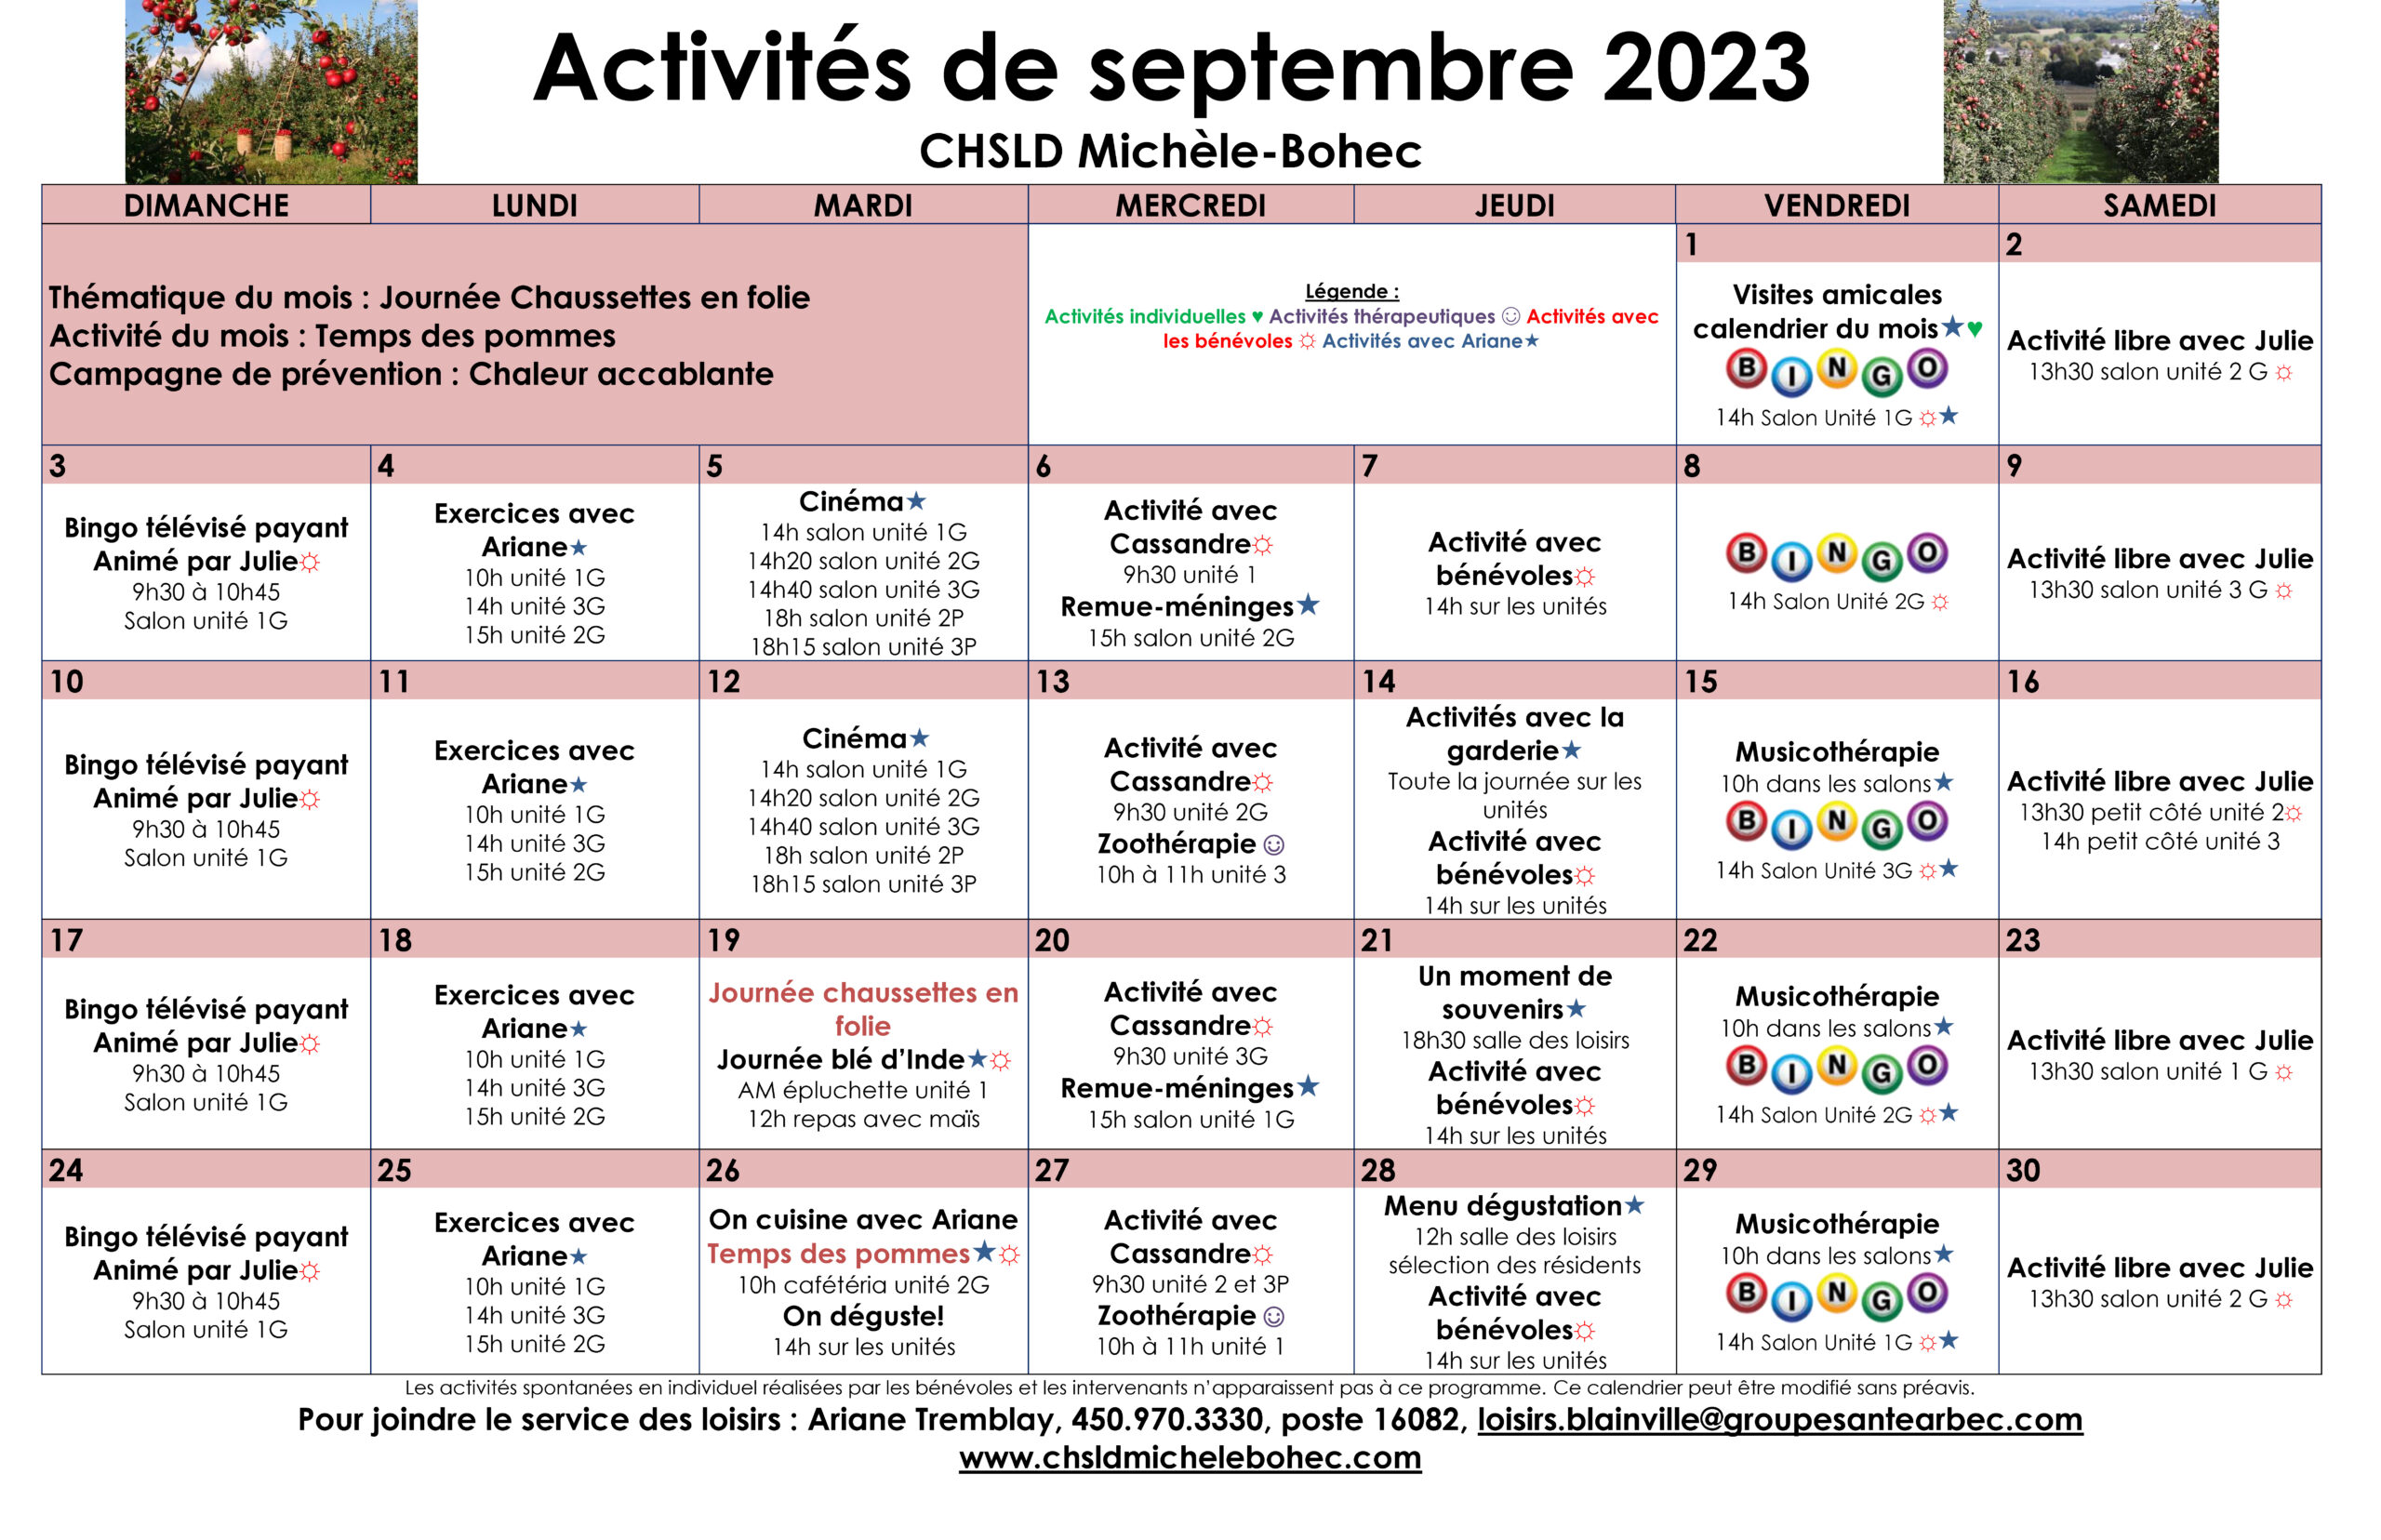 Calendrier des loisirs du mois de septembre 2023 pour les résidents du CHSLD Michèle-Bohec